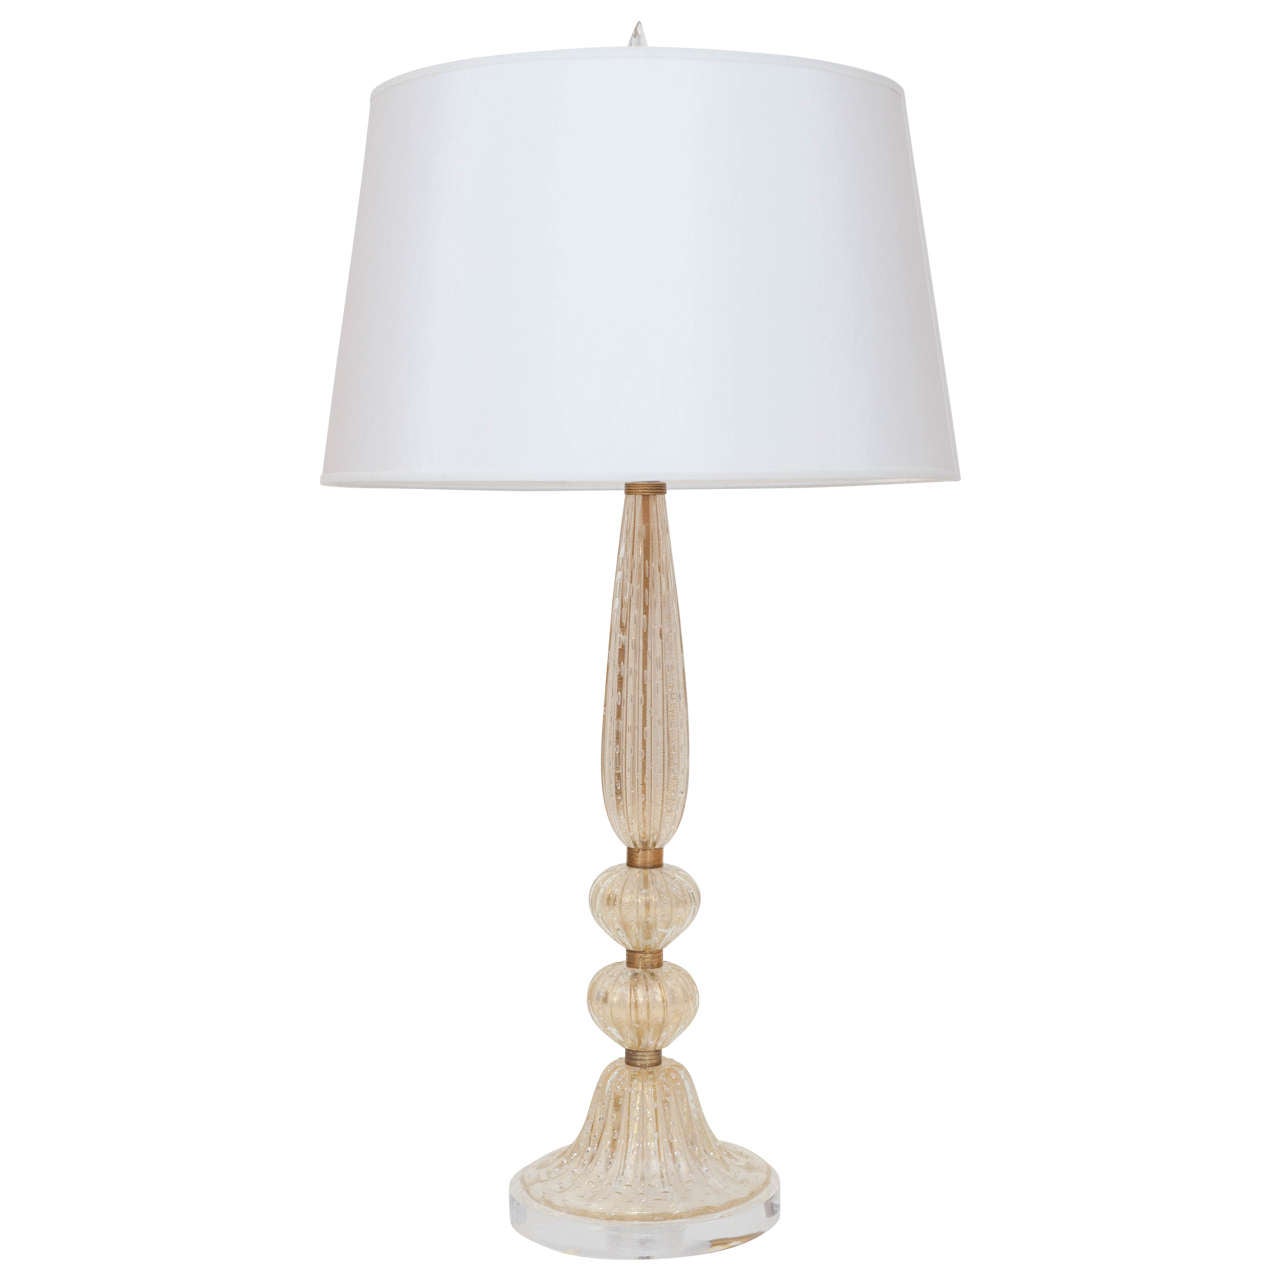 Single Murano Lamp Attributed to Barovier